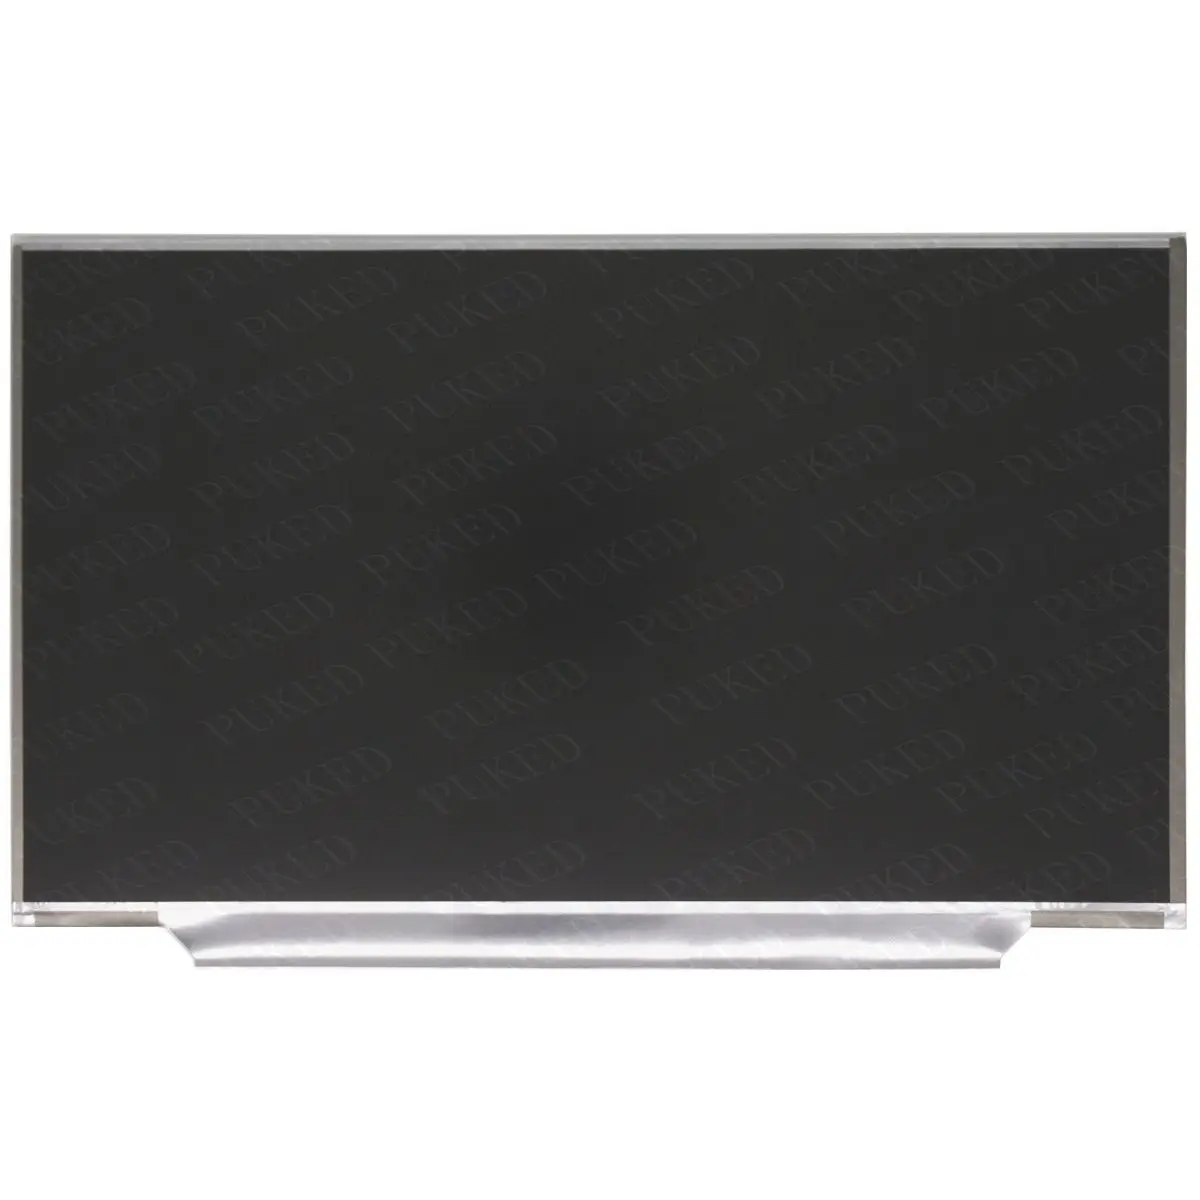 Оригинальный для ноутбука Lenovo Thinkpad X1 Carbon ЖК-светодиодный экран LP140WD2-TLE2 LP140WD2 (TL) (E2) 1600*900 FRU 04X1756 1